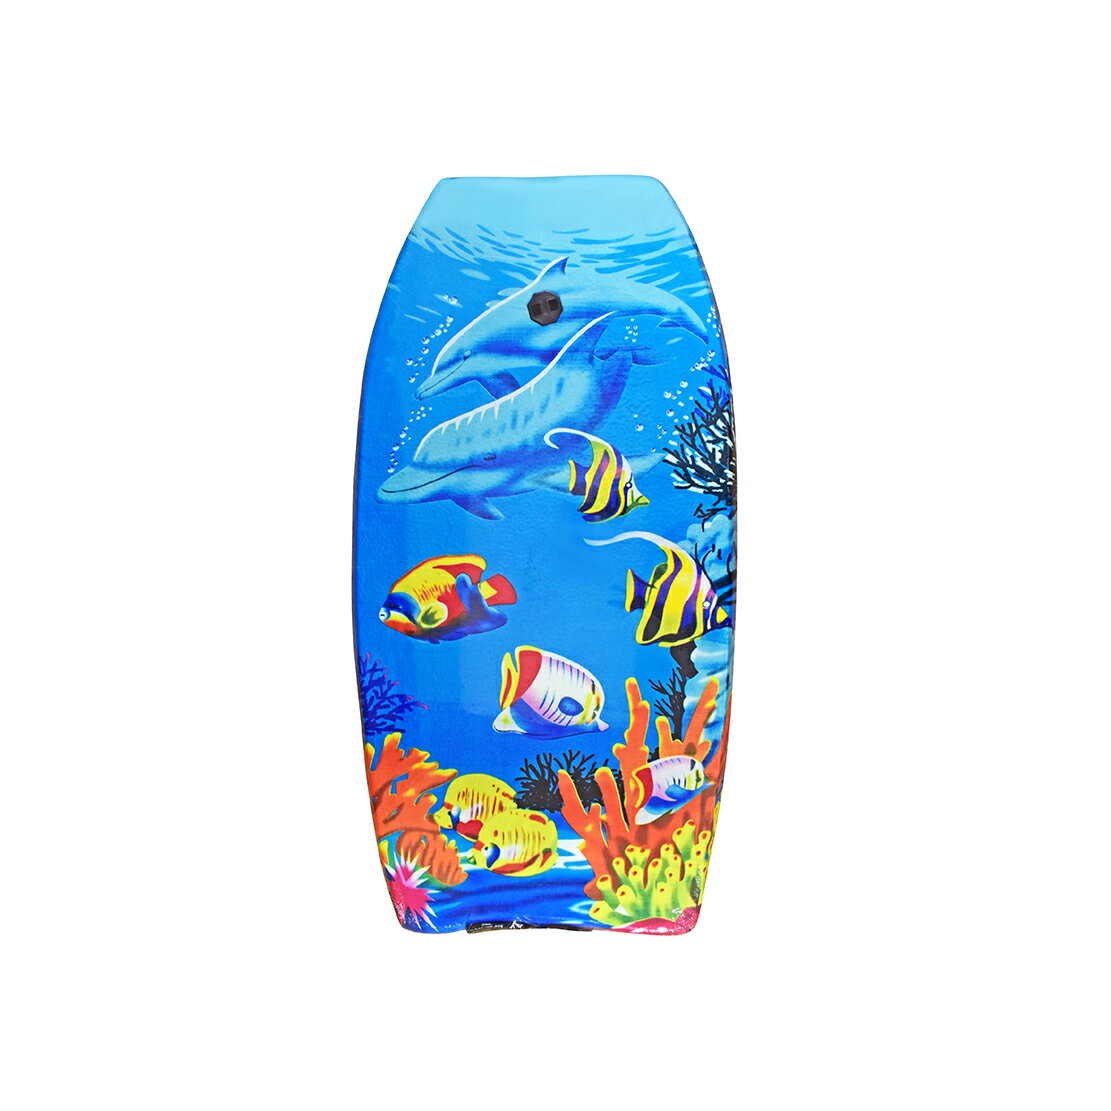 【Treewalker露遊】水上滑水趴板 滑水板 大型 圖樣滑/划水板/衝浪板 大沖浪 浮板